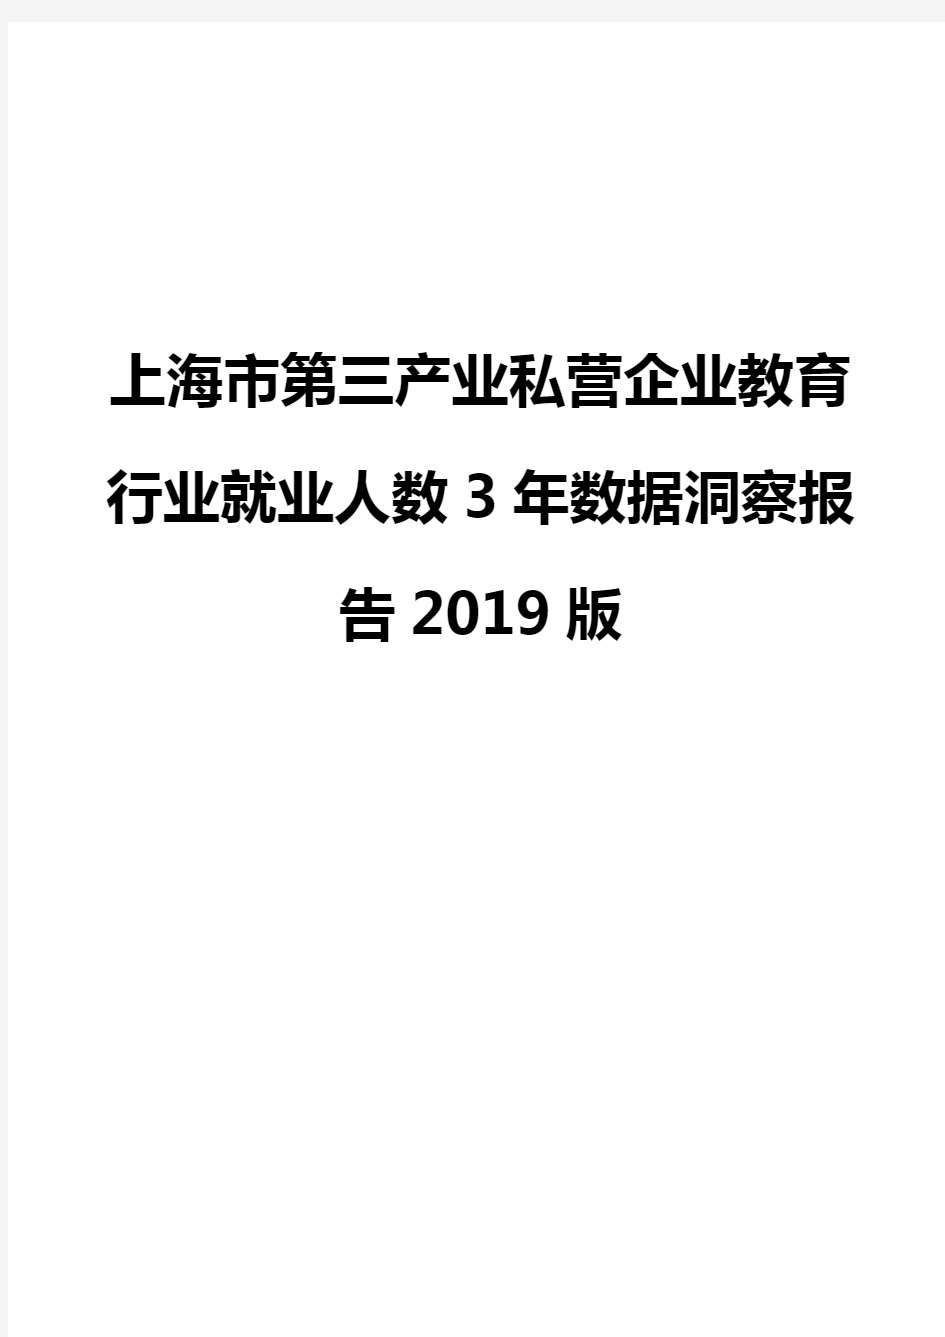 上海市第三产业私营企业教育行业就业人数3年数据洞察报告2019版